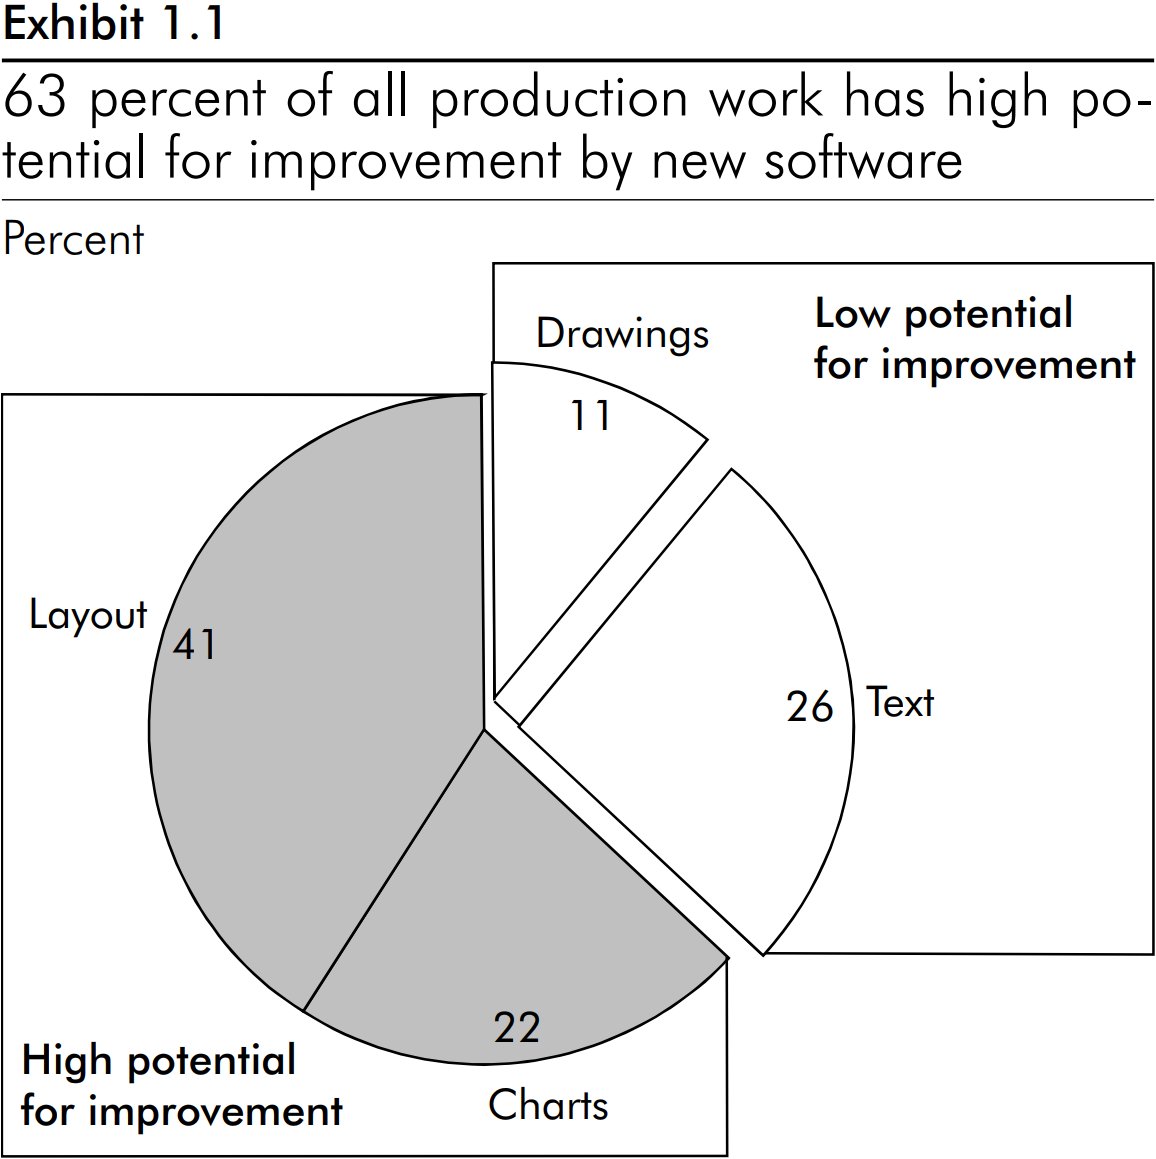 Gráfico circular que muestra que el 63 % del trabajo de producción de diapositivas tiene un alto potencial para que el software lo mejore.